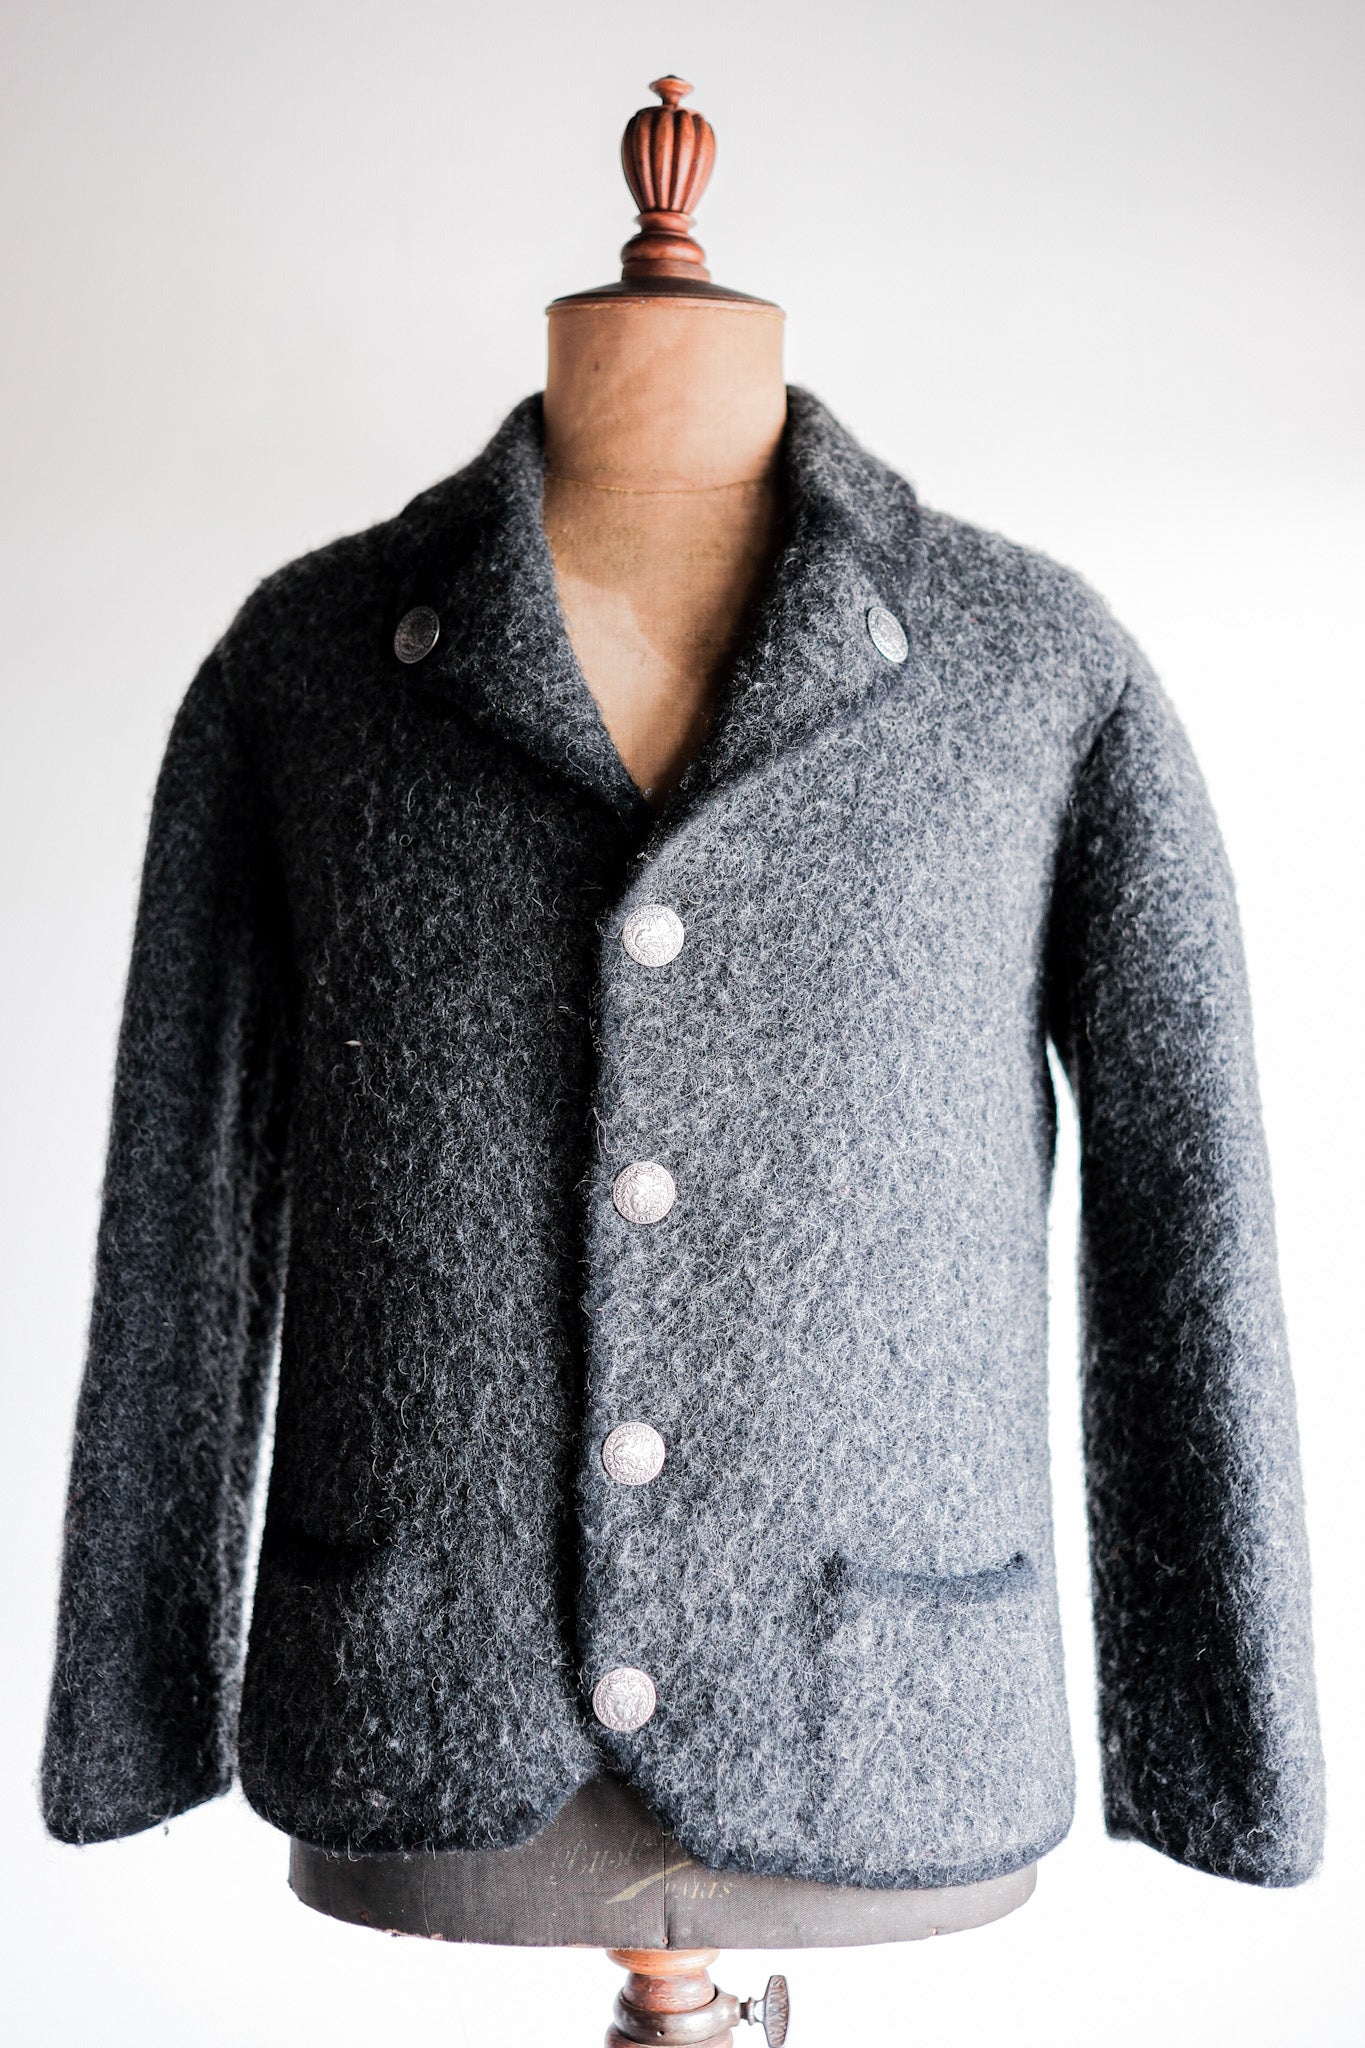 【~80's】HOFER Tyrolean Wool Jacket Size.44